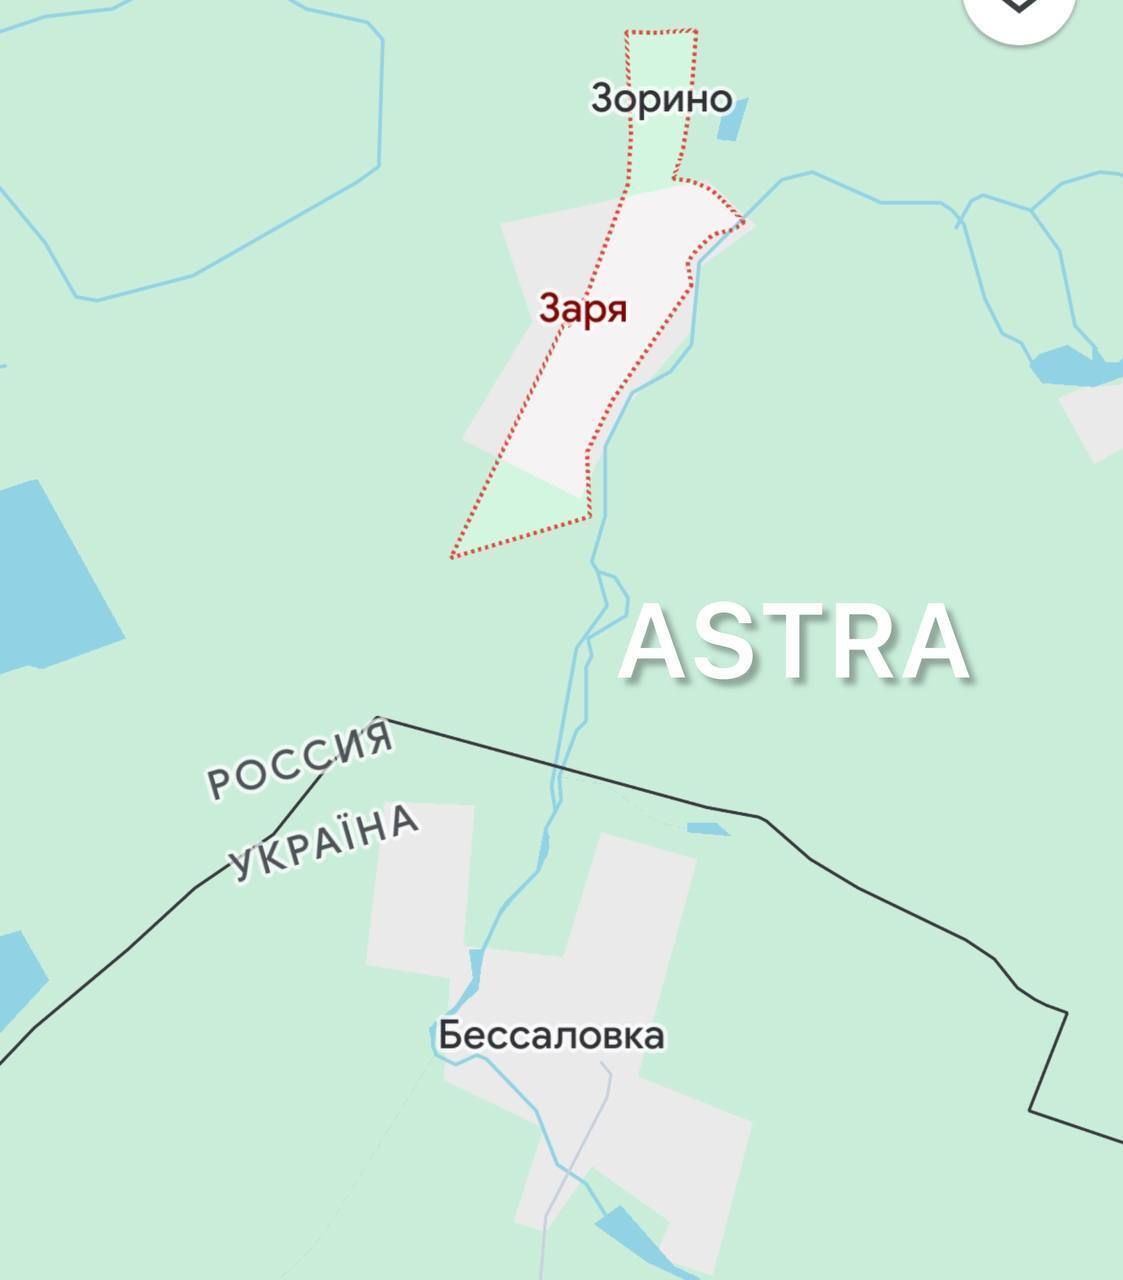 В России пожаловались на атаку дрона на позиции военных в Курской области: есть раненые